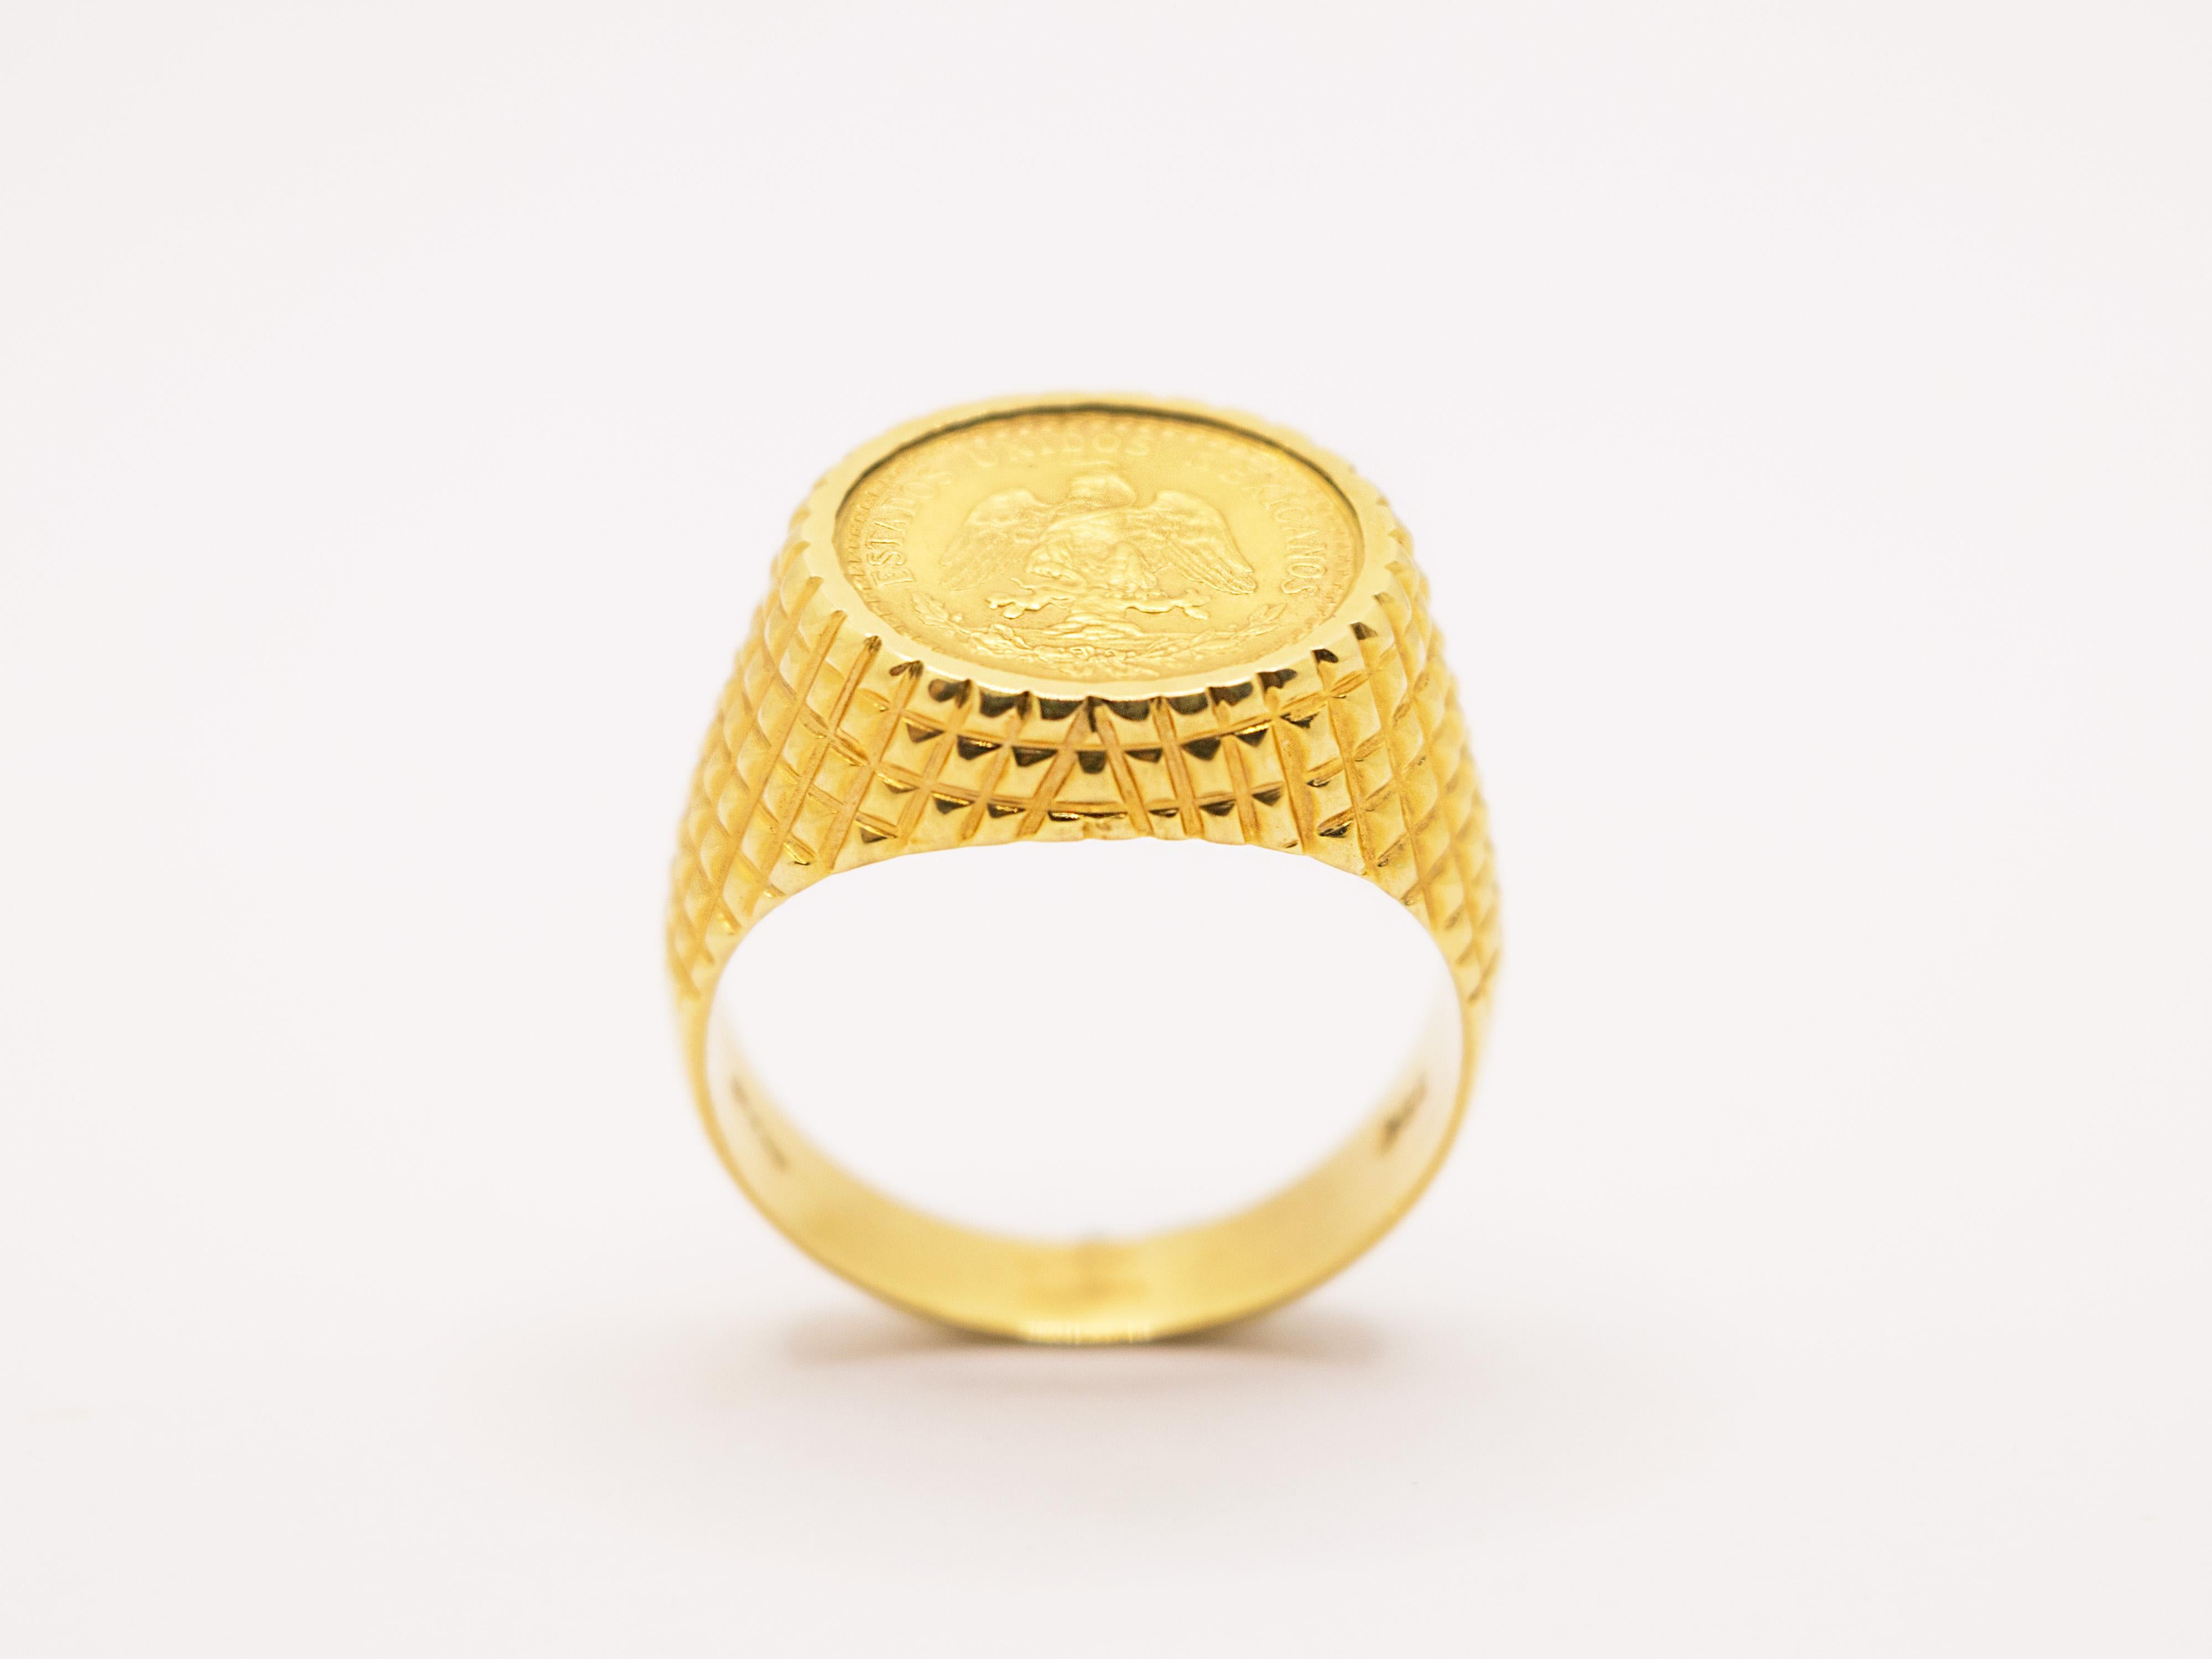 Ein klassischer Chevalier-Ring aus 18 Kt Gelbgold, besetzt mit einer mexikanischen Dos Pesos-Münze.
Dieser Ring kann sowohl als Ring für den kleinen Finger als auch für den Ringfinger oder Mittelfinger getragen werden.
Es kann leicht erweitert oder